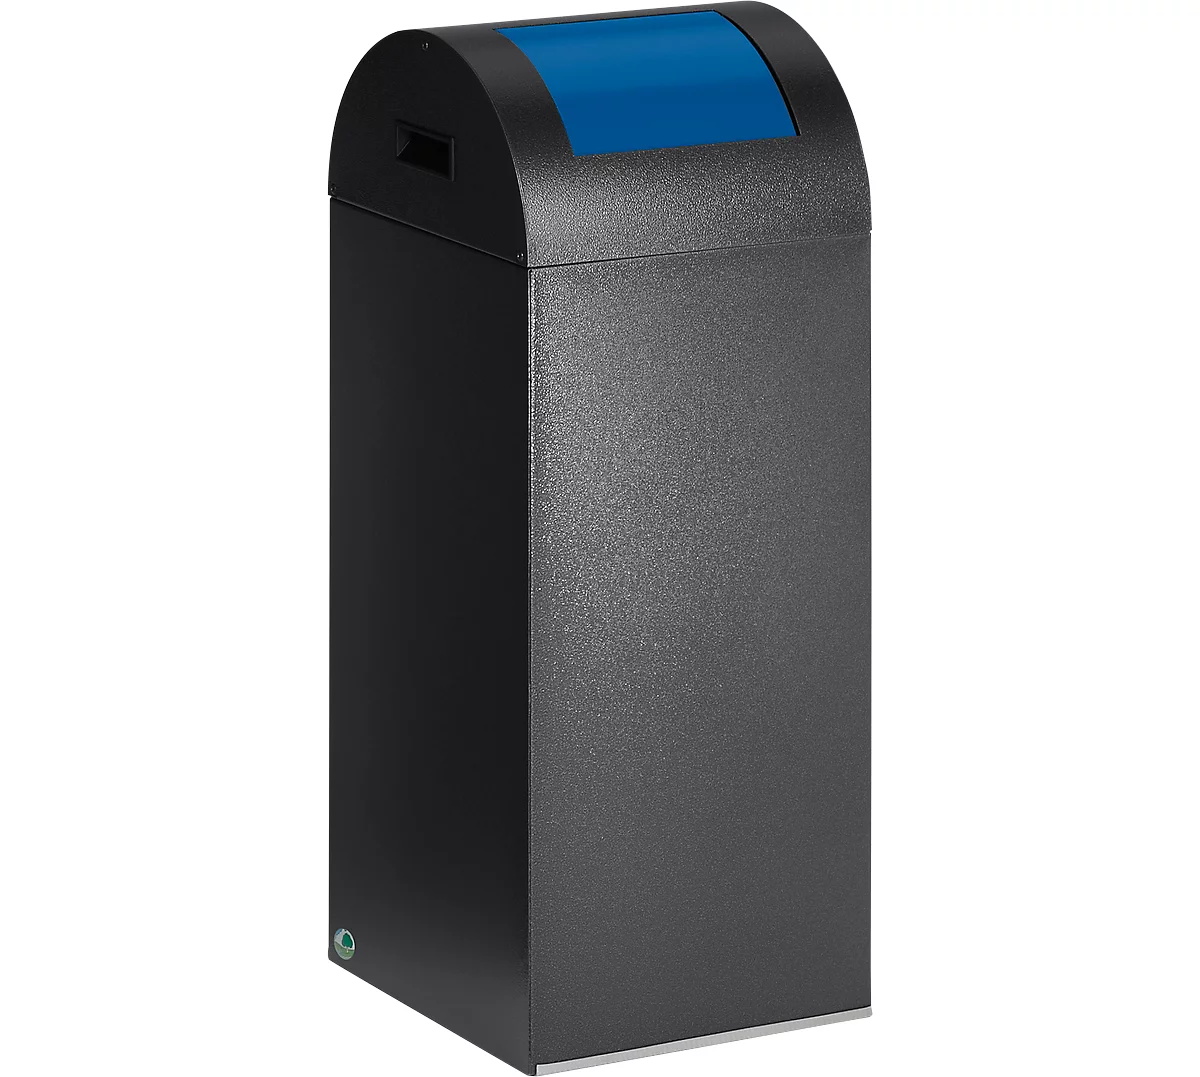 Zelfblussende afvalverzamelaar voor recycleerbaar afval 55R, antiekzilver/blauw